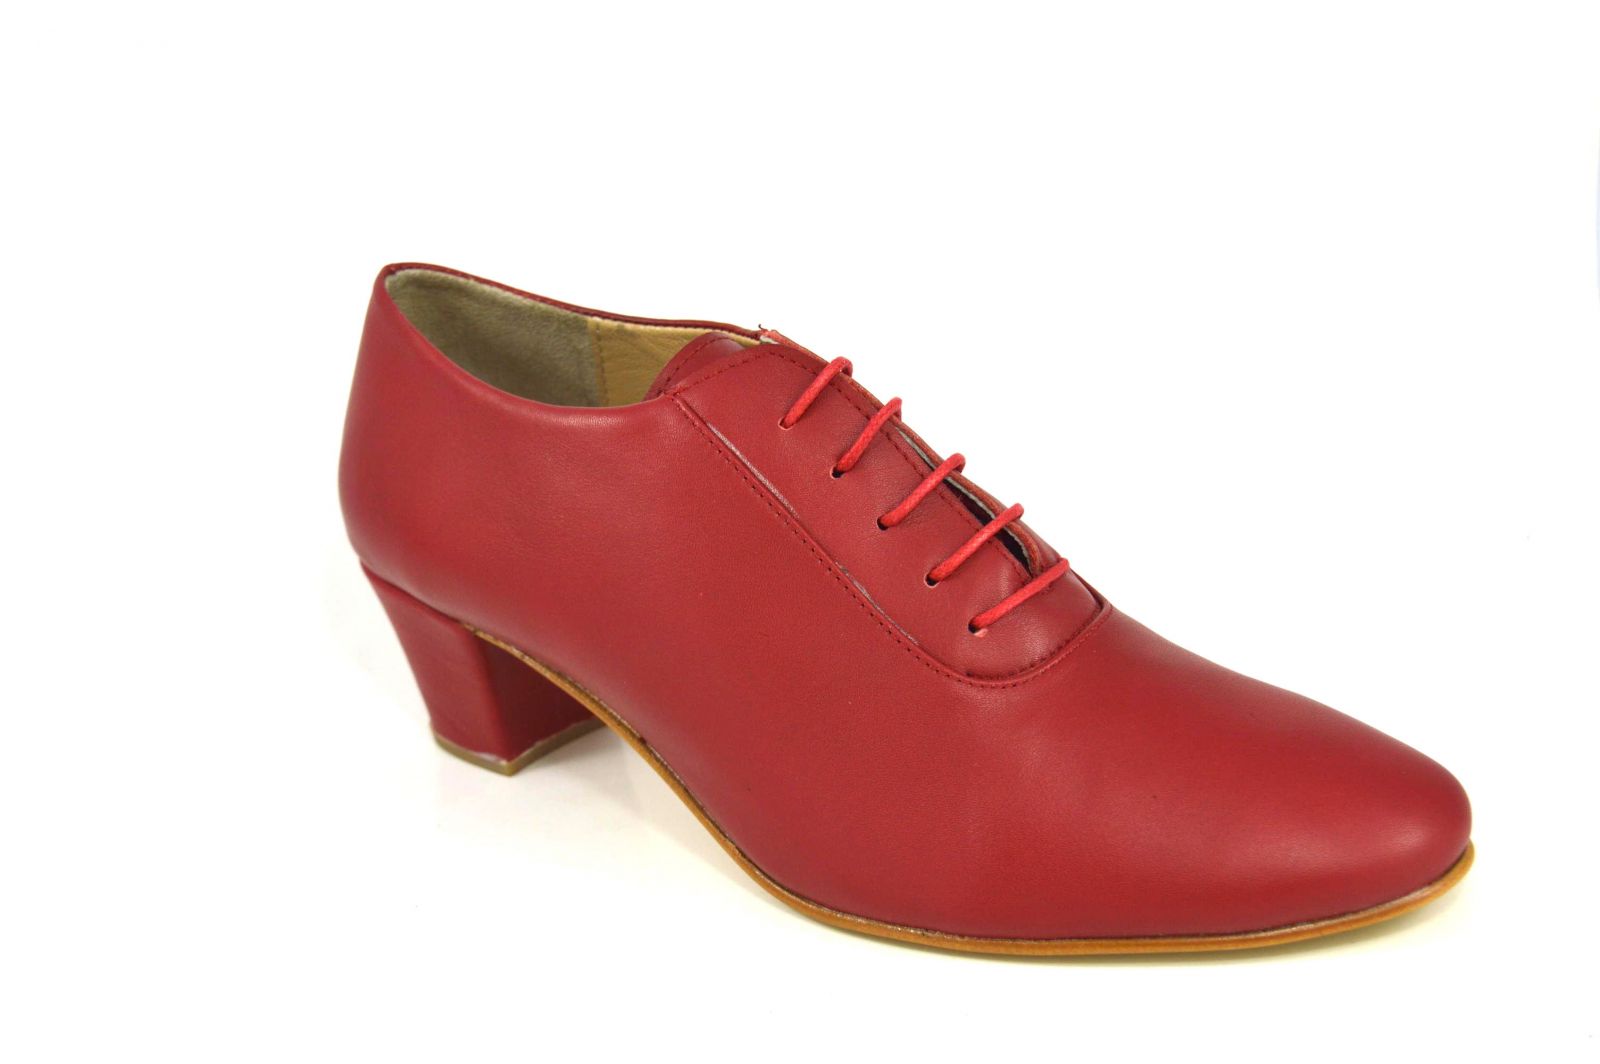 Γυναικείο παπούτσι tango κλειστού τύπου από πολύ μαλακό κόκκινο δέρμα